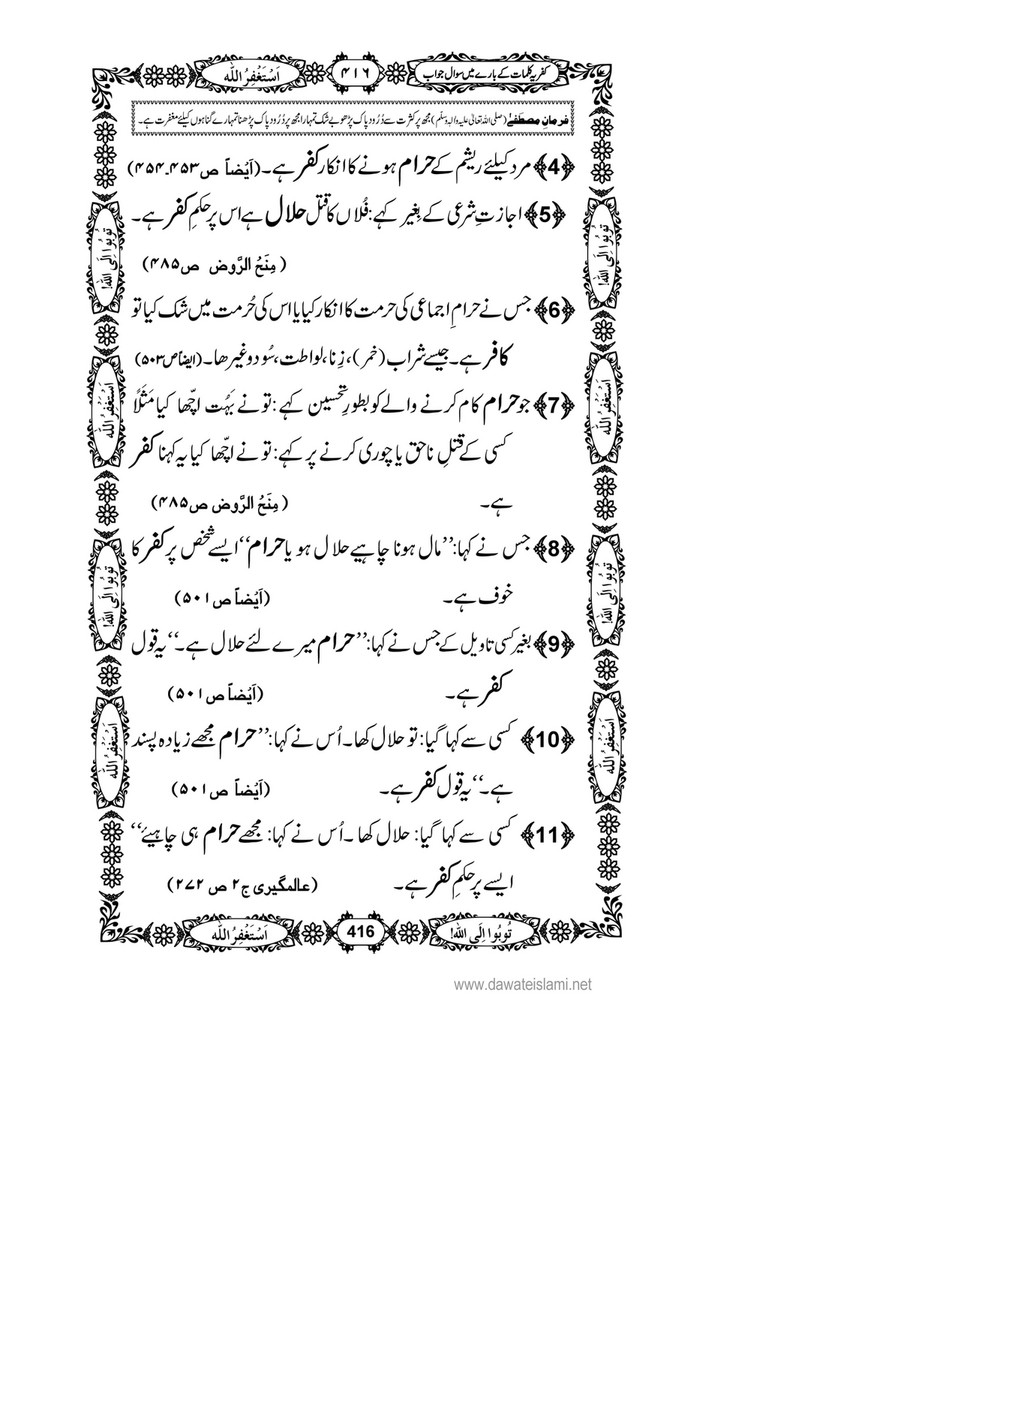 My Publications Kufriya Kalmaat Kay Baray Main Sawal Jawab Page 434 435 Created With Publitas Com